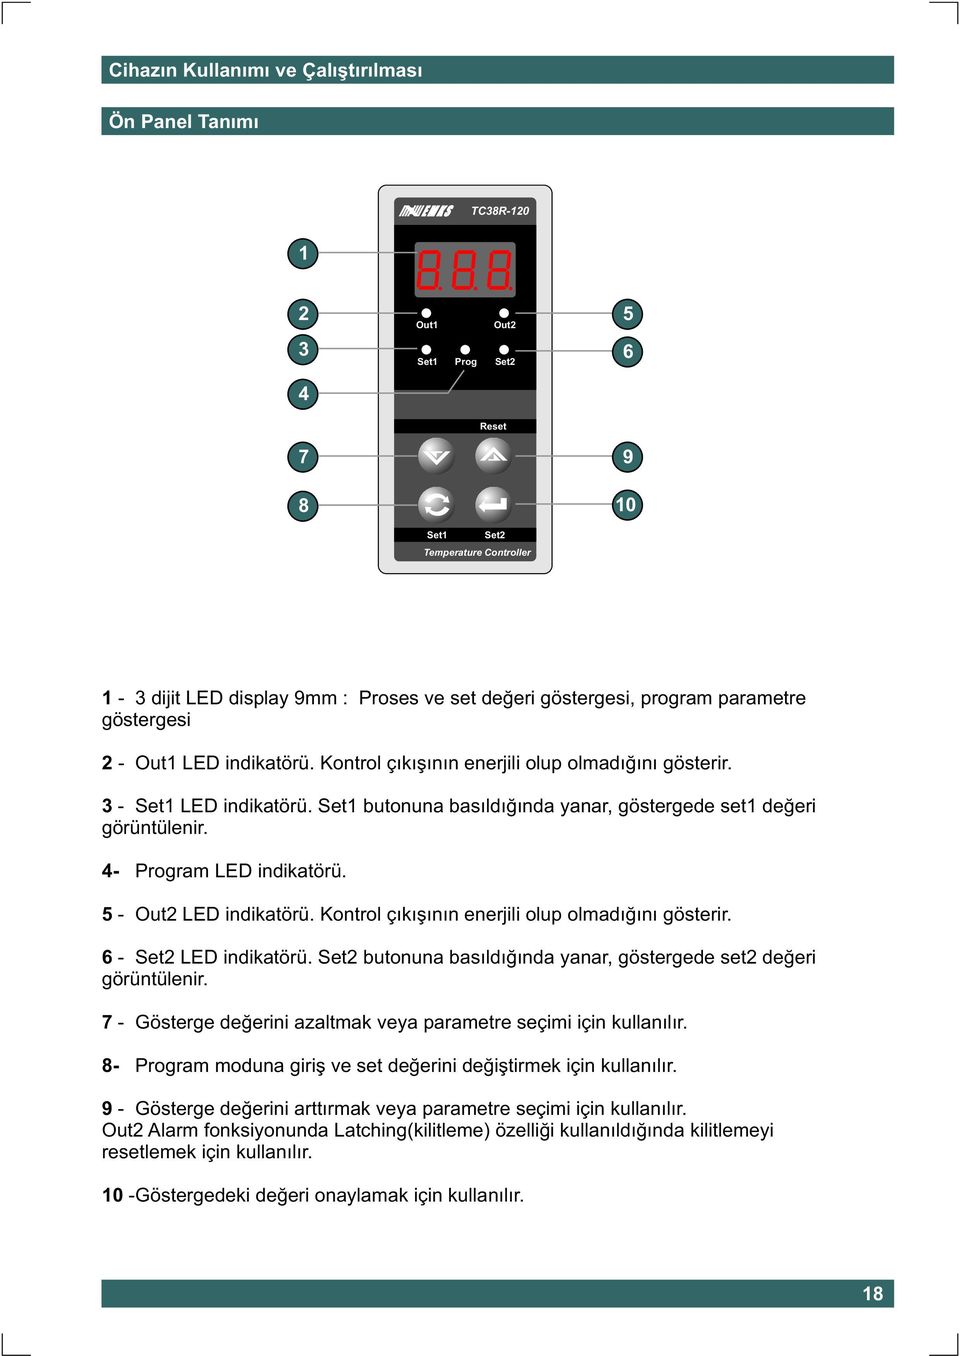 Kontrol çýkýþýnýn enerjili olup olmadýðýný gösterir. 6 - LED indikatörü. butonuna basýldýðýnda yanar, göstergede set2 deðeri görüntülenir.